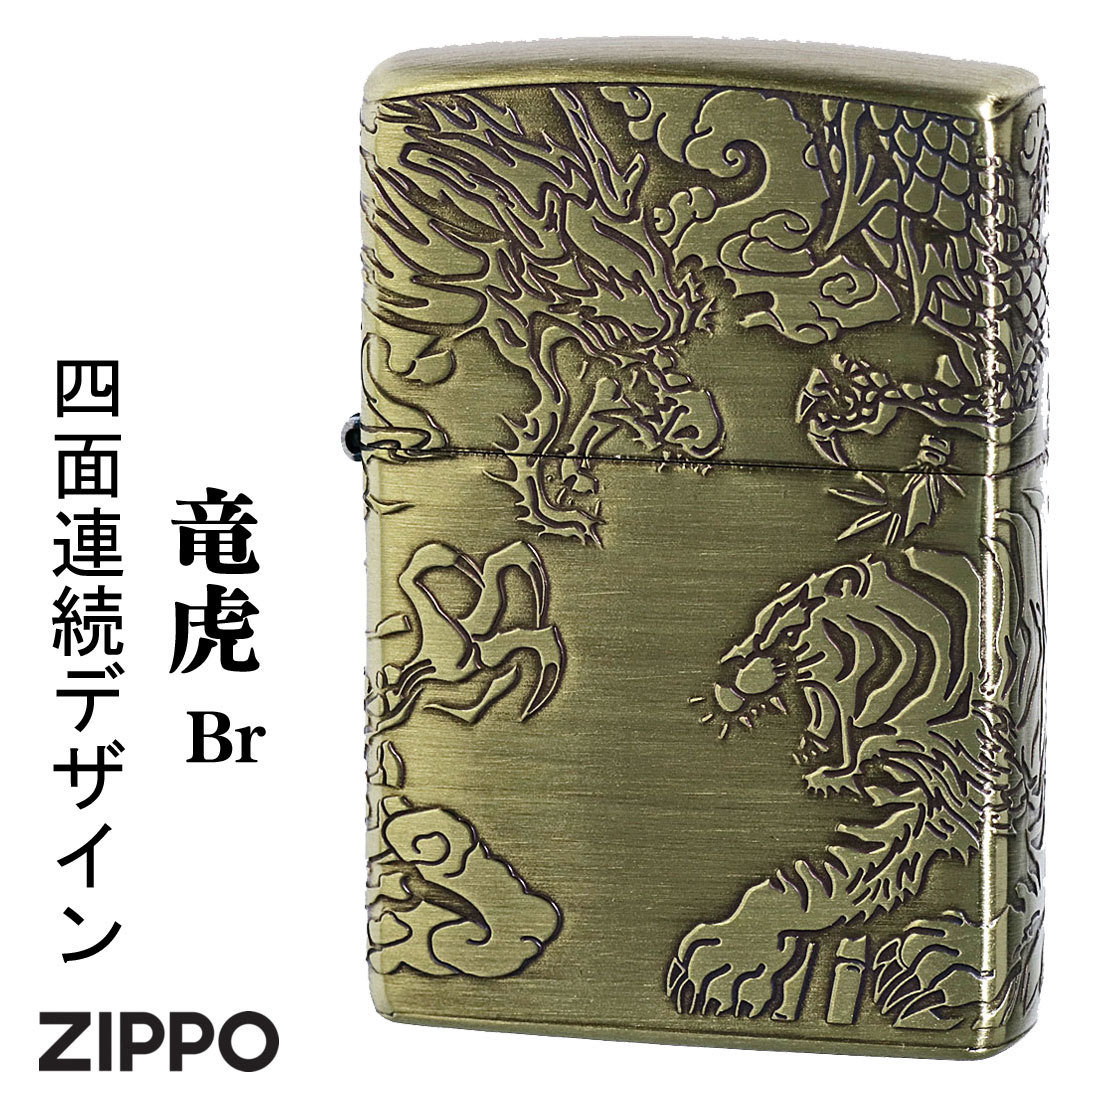 ZIPPO ジッポ ライター 銀 御守り 龍虎 かっこいい 4面エッチング 彫刻